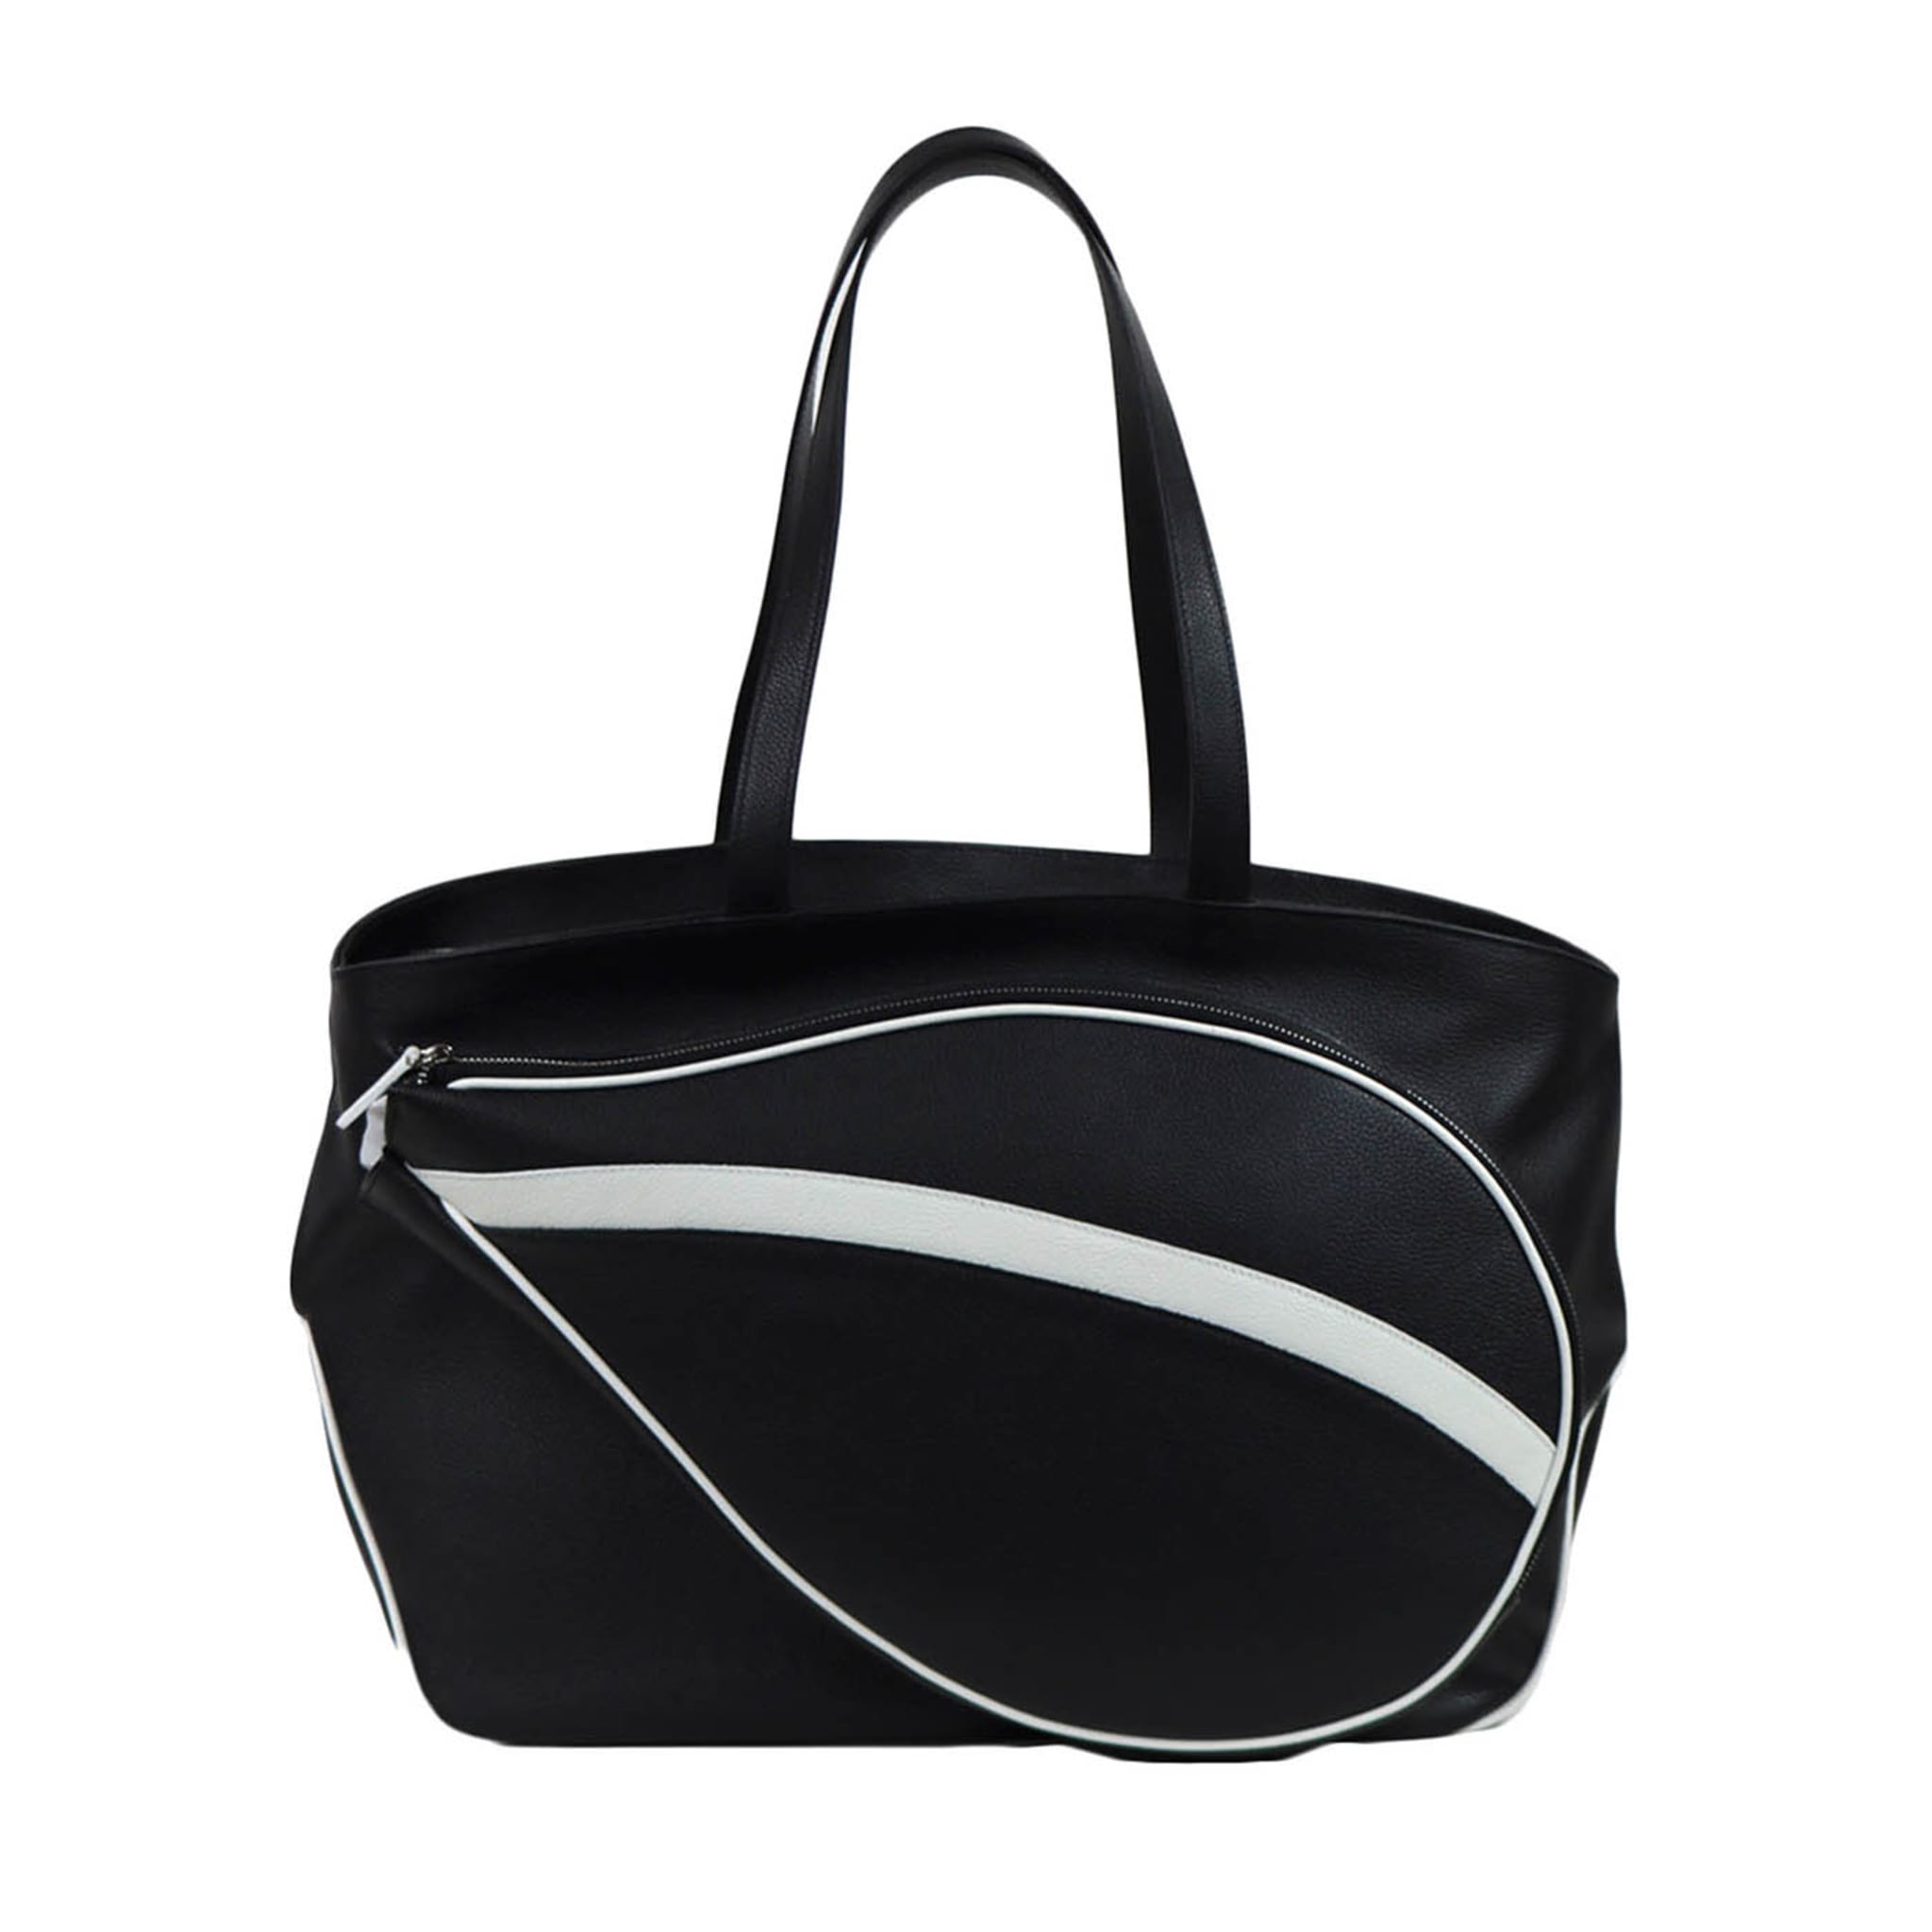 Schwarz-weiße Sporttasche mit Tasche in Form eines Tennisschlägers - Hauptansicht